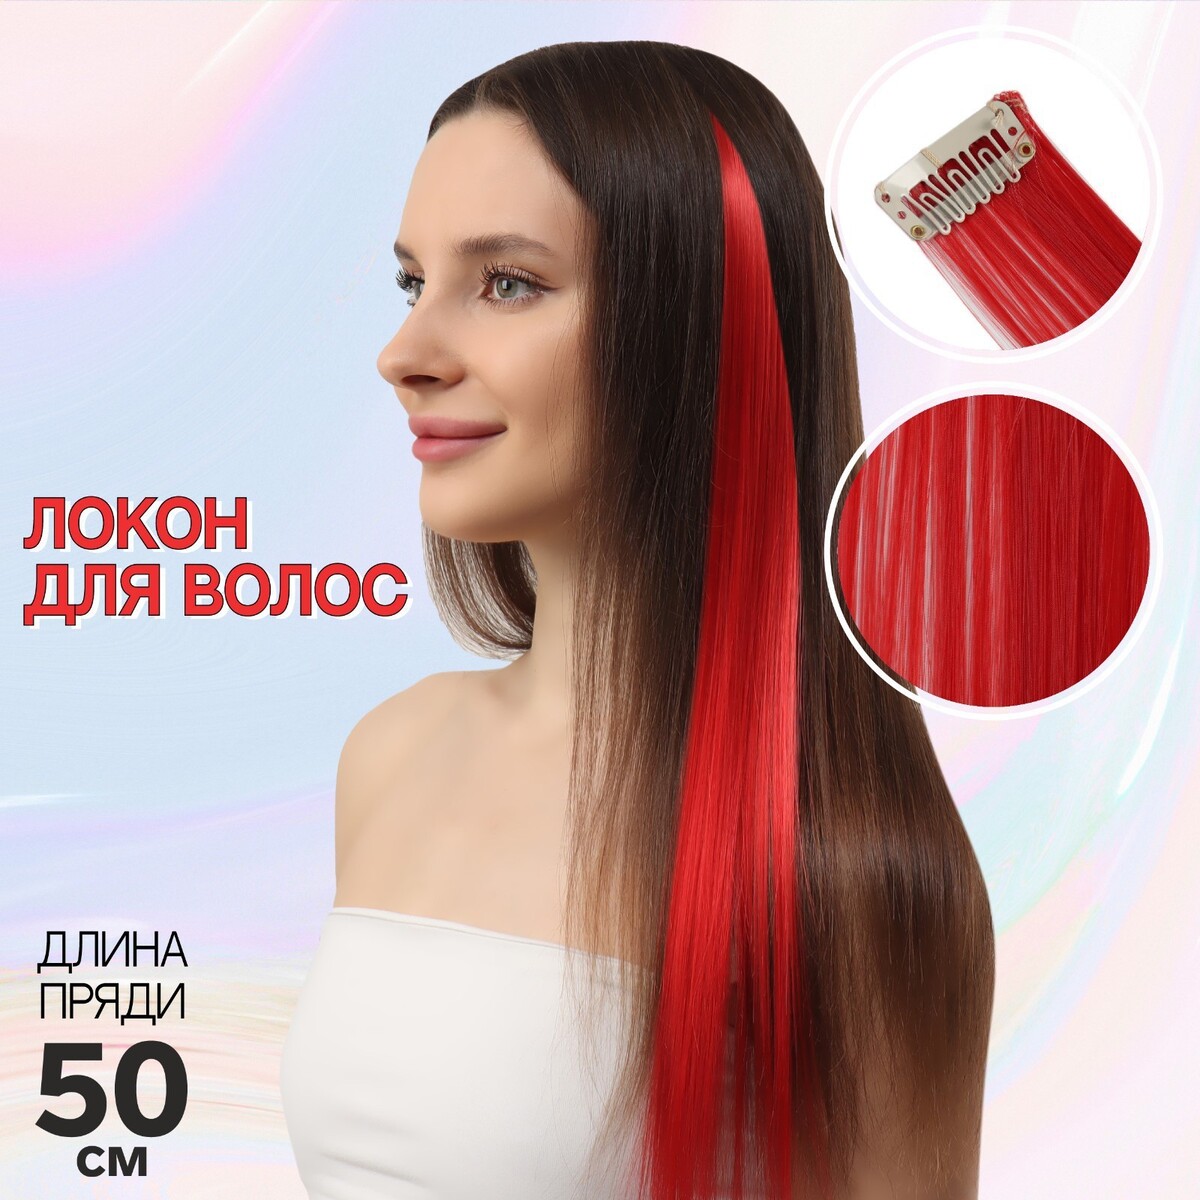 Локон накладной, прямой волос, на заколке, 50 см, 5 гр, цвет красный локон накладной прямой волос на заколке 50 см 5 гр красный